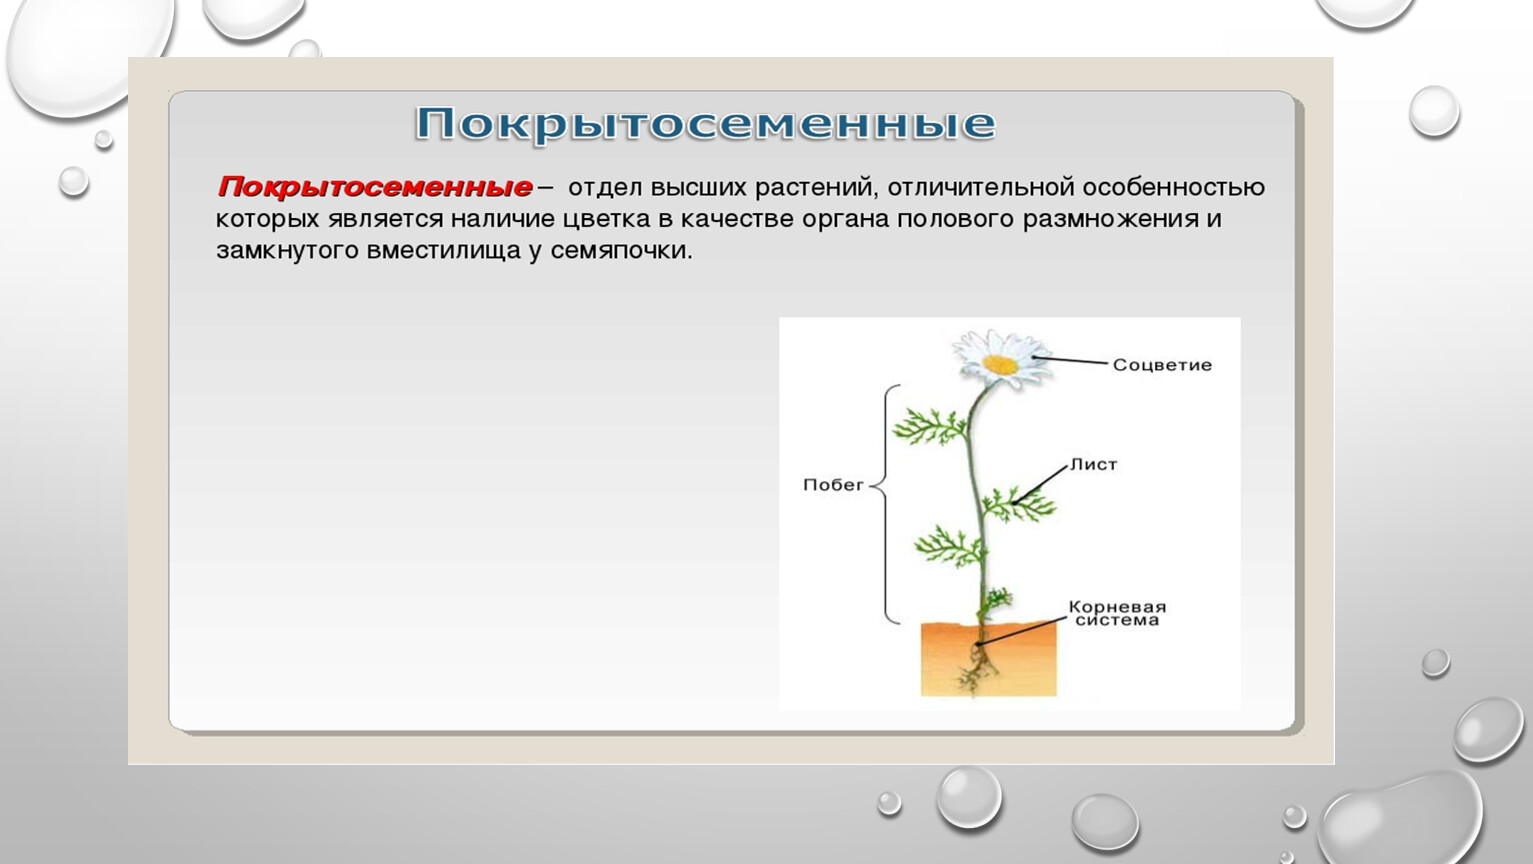 Функция покрытосеменных растений